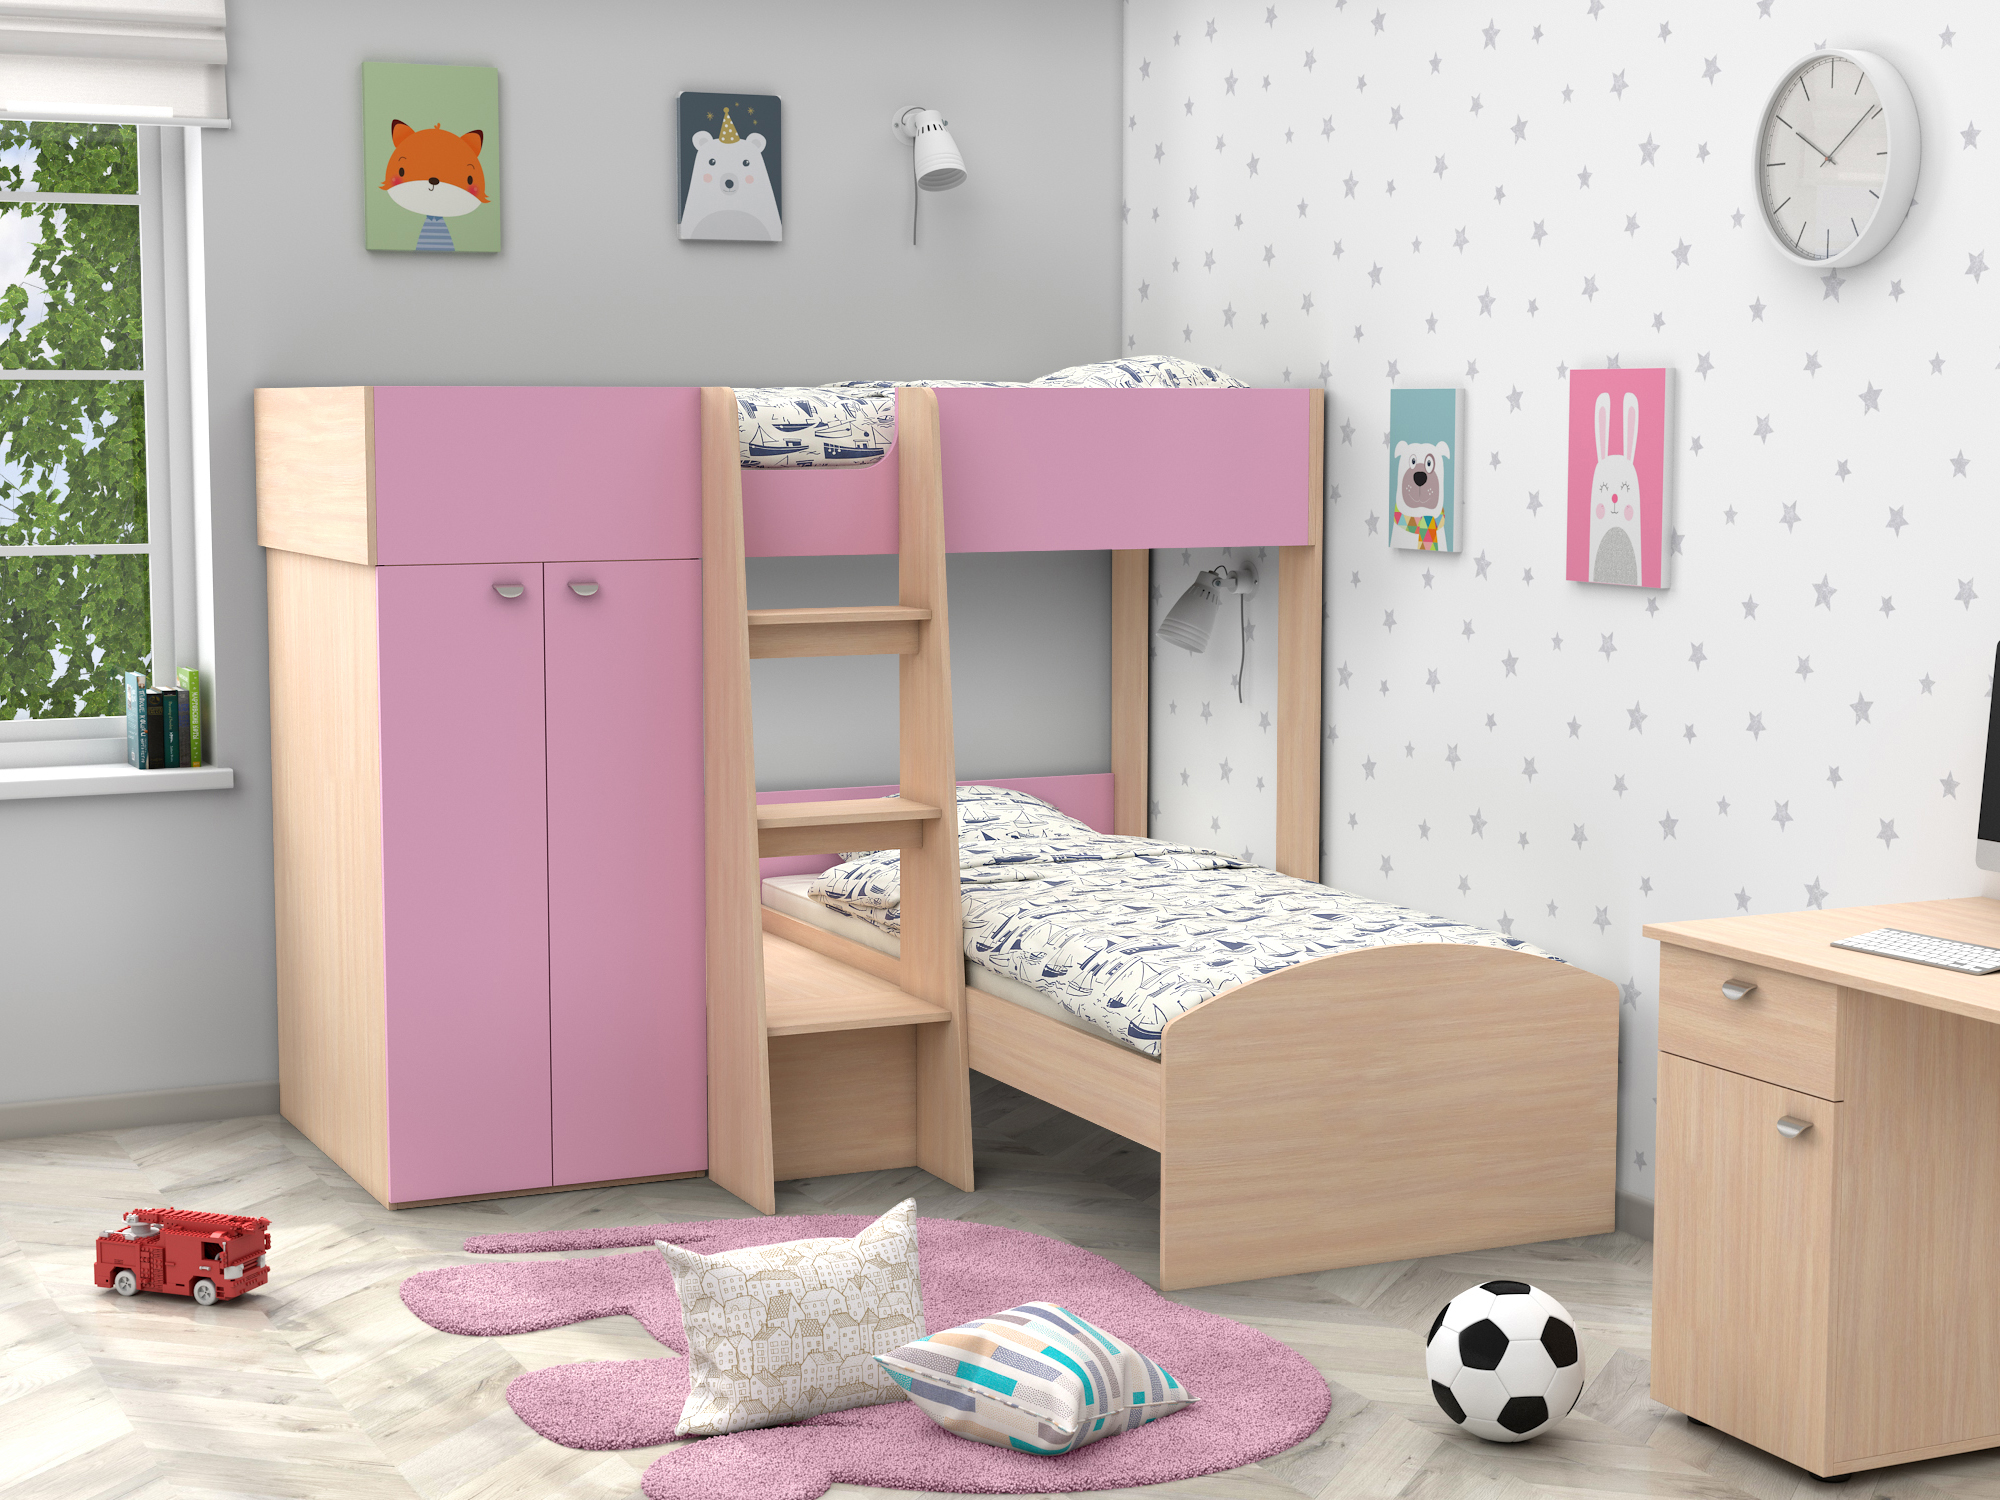 Двухъярусная кровать Golden Kids-4 (90х200) Розовый, Белый, Бежевый, ЛДСП двухъярусная кровать golden kids 4 90х200 дуб молочный белый бежевый лдсп